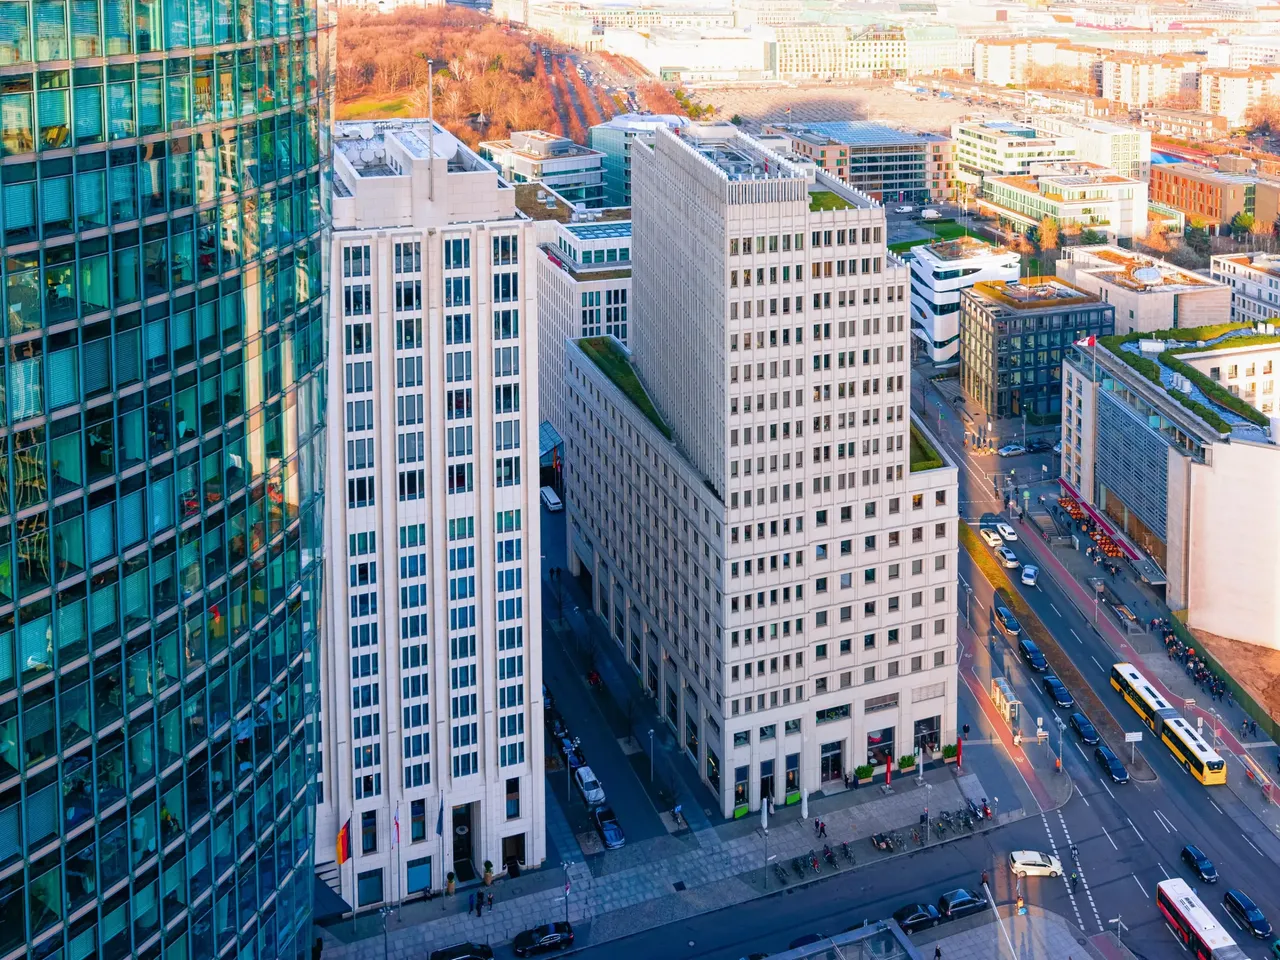 Eine Drohnenaufnahme des Potsdamer Platzes in Berlin. Rechts auf dem Bild ist die hausInvest Immobilie P5 zu sehen.